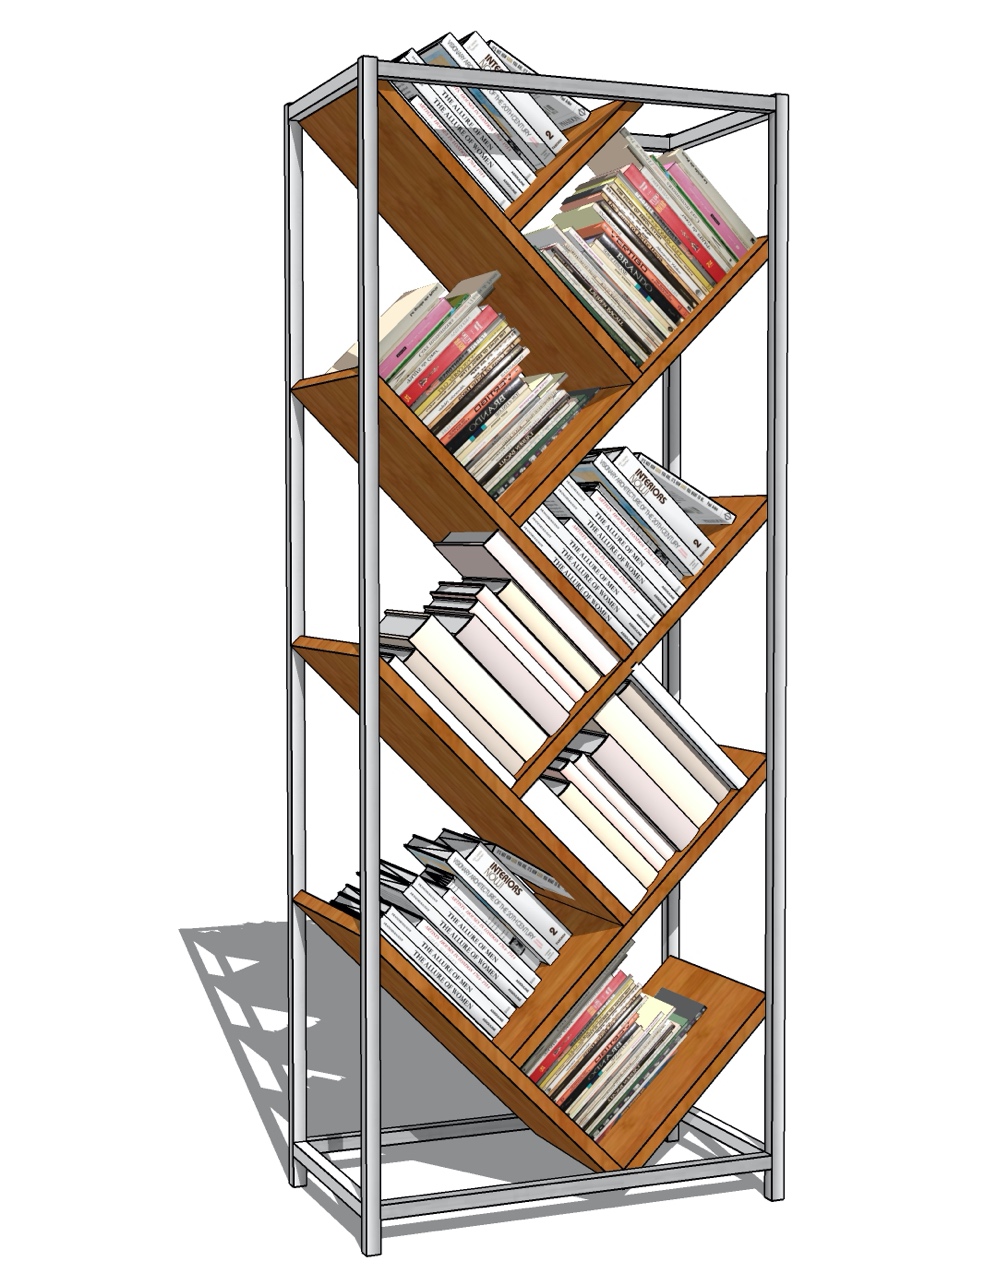 gibbs bookcase.jpg